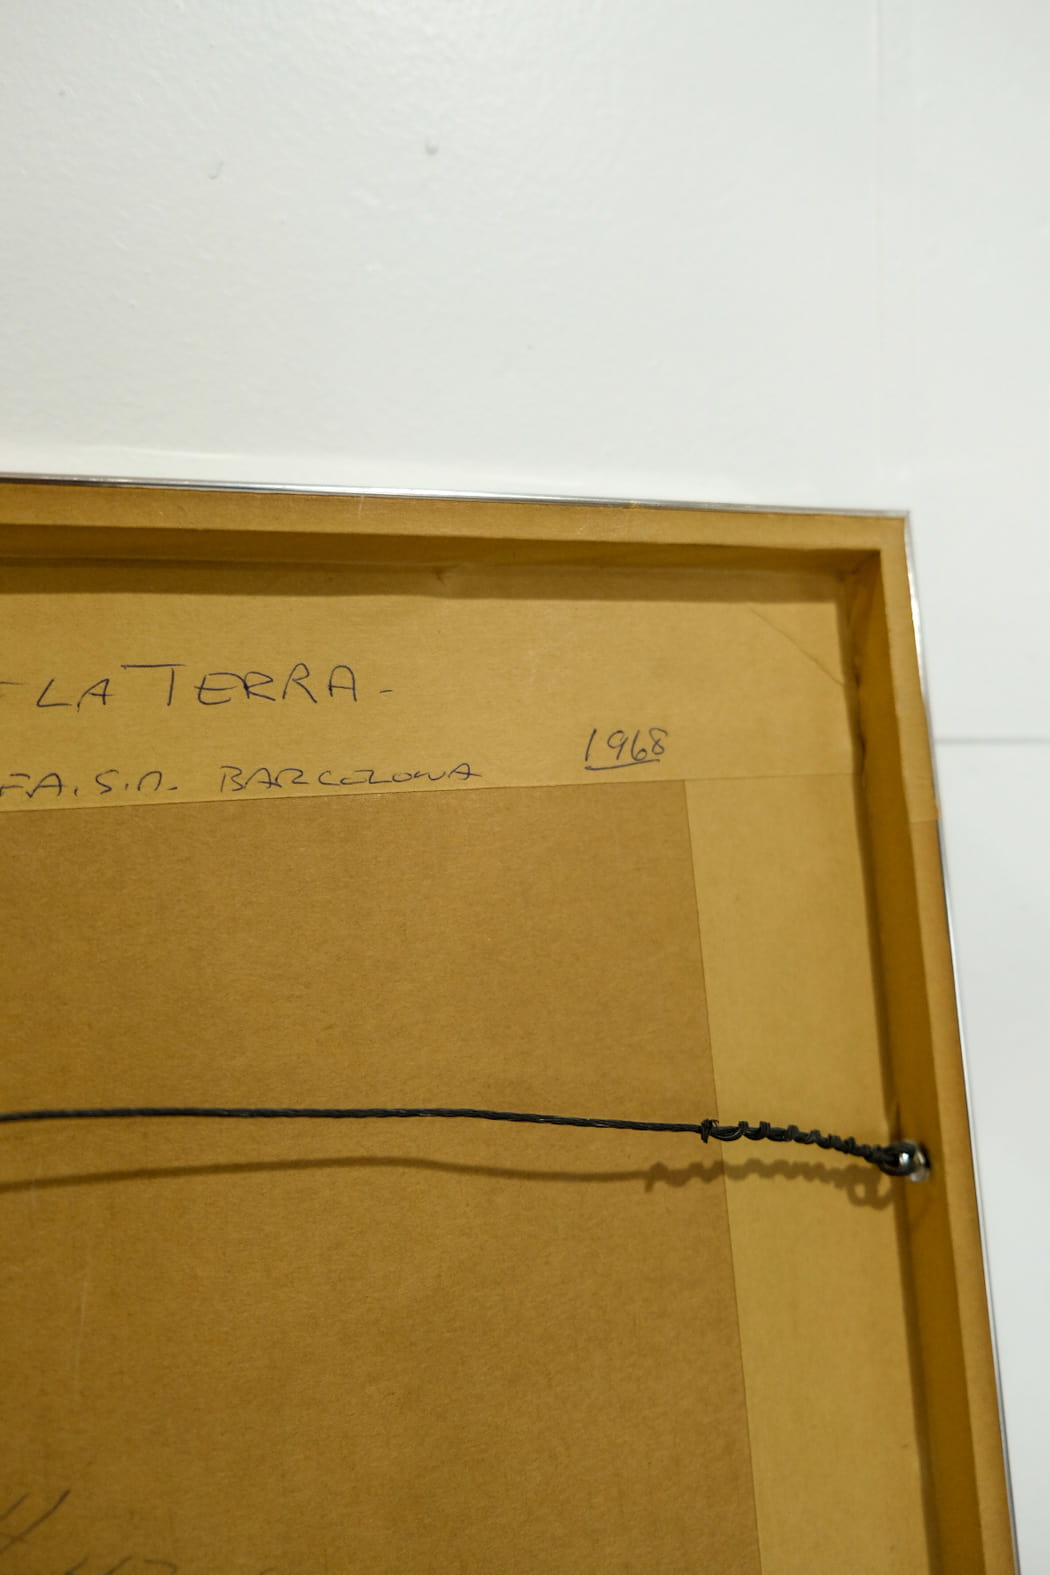 Joan Miro "Les Essencies De La Terra" Original Lithograph 1968